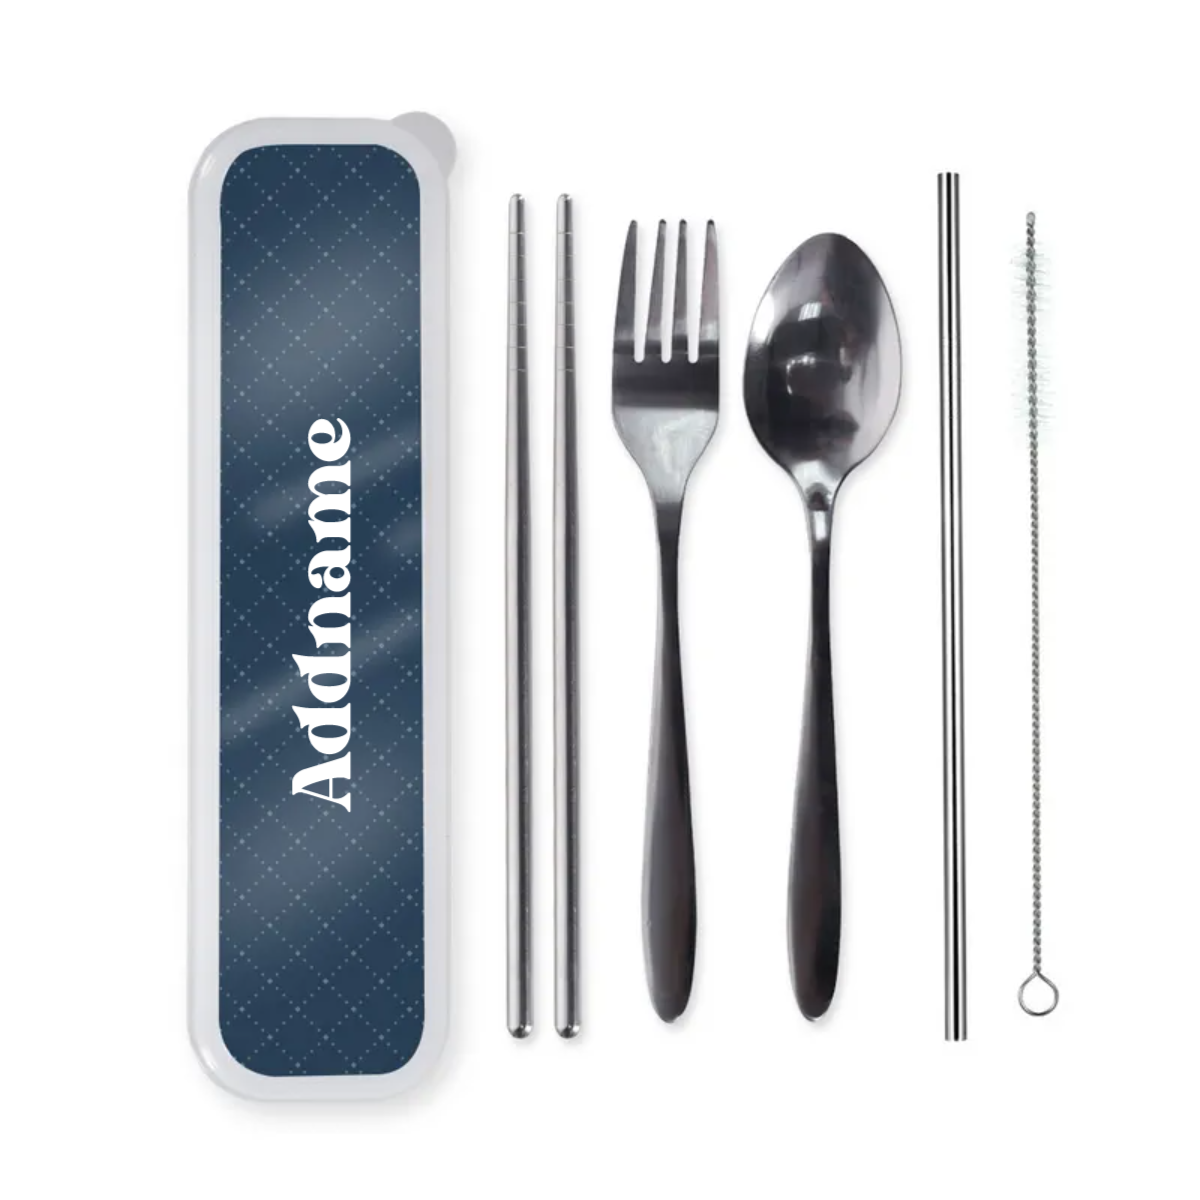 Cutlery Set - FamsyMall